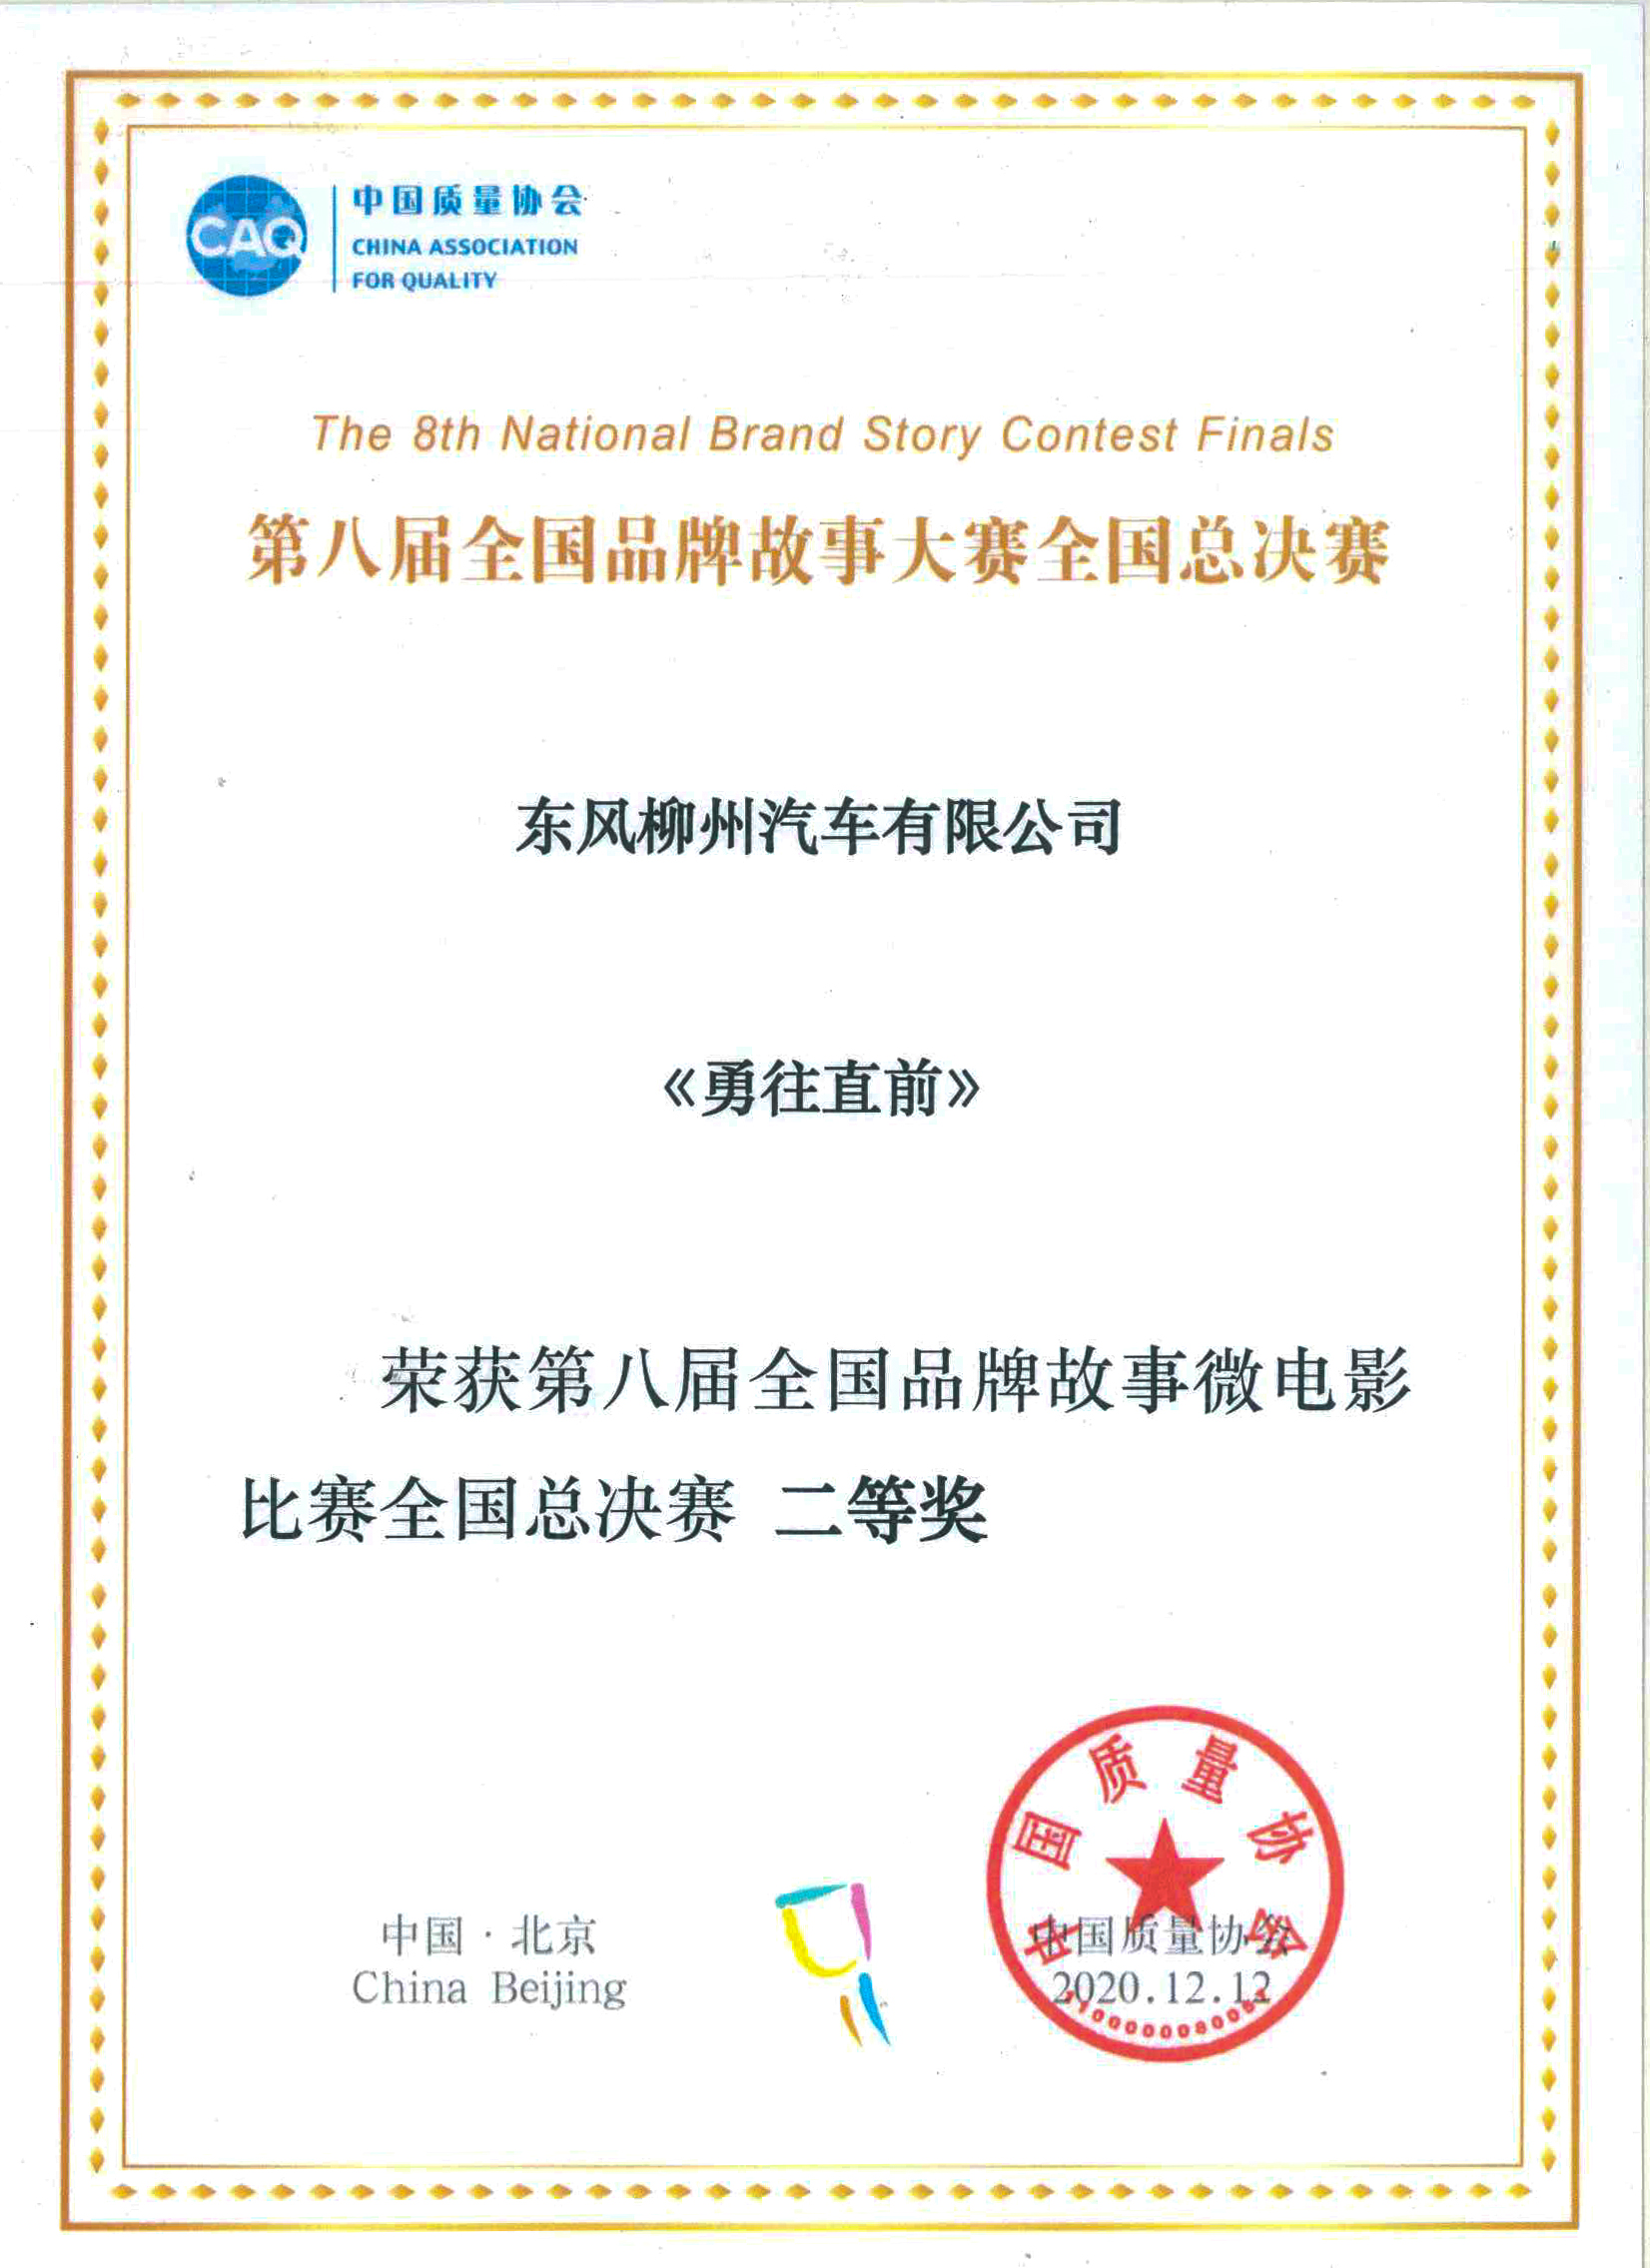 中国质量协会——第八届全国品牌故事微电影比赛全国总决赛二等奖